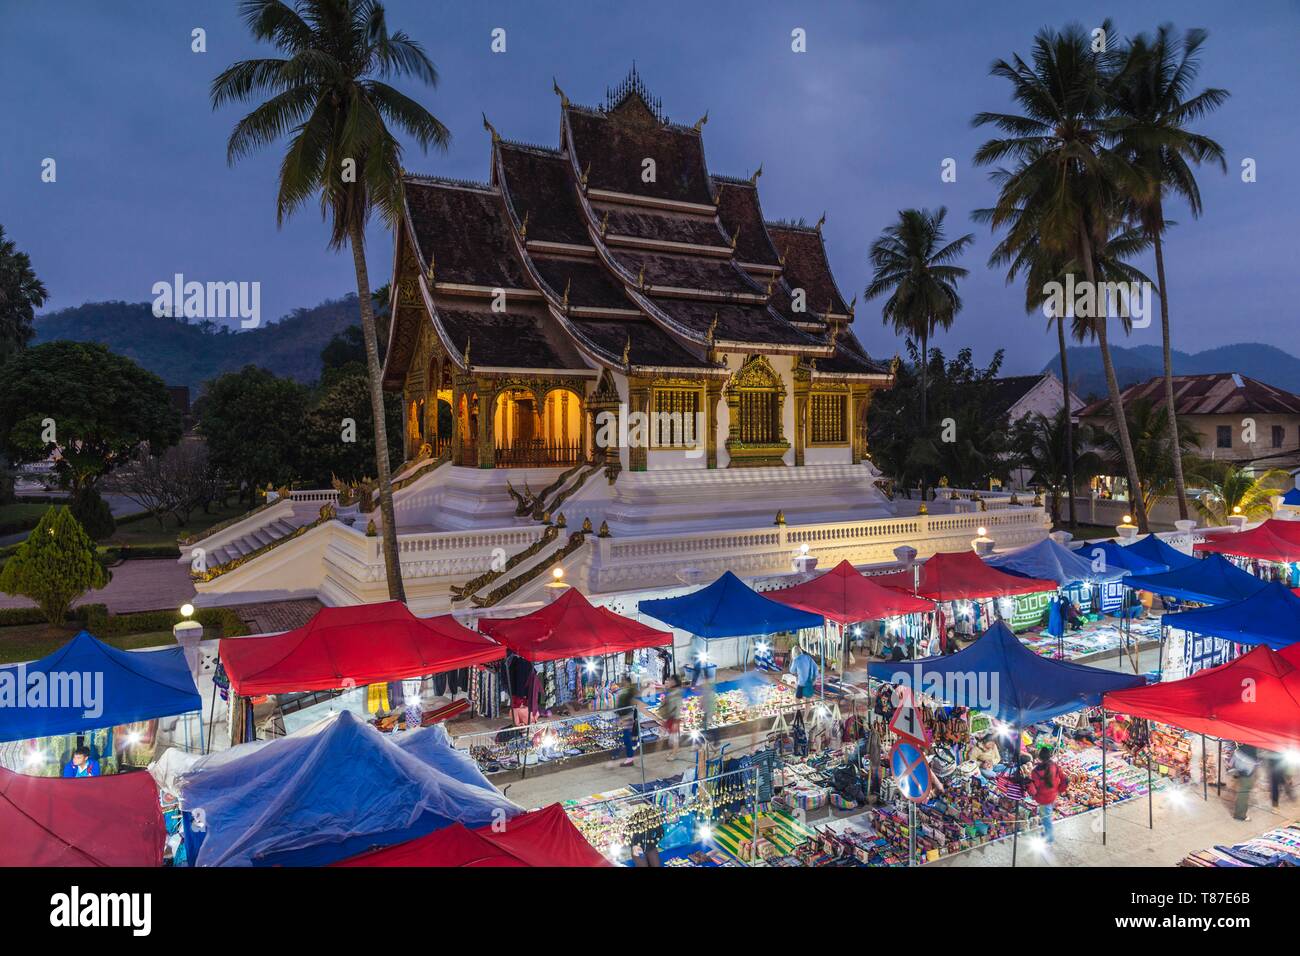 Laos, Luang Prabang, Sisavangvong Carretera, Mercado Nocturno de artesanía y Wat Ho Pha Bang, noche Foto de stock